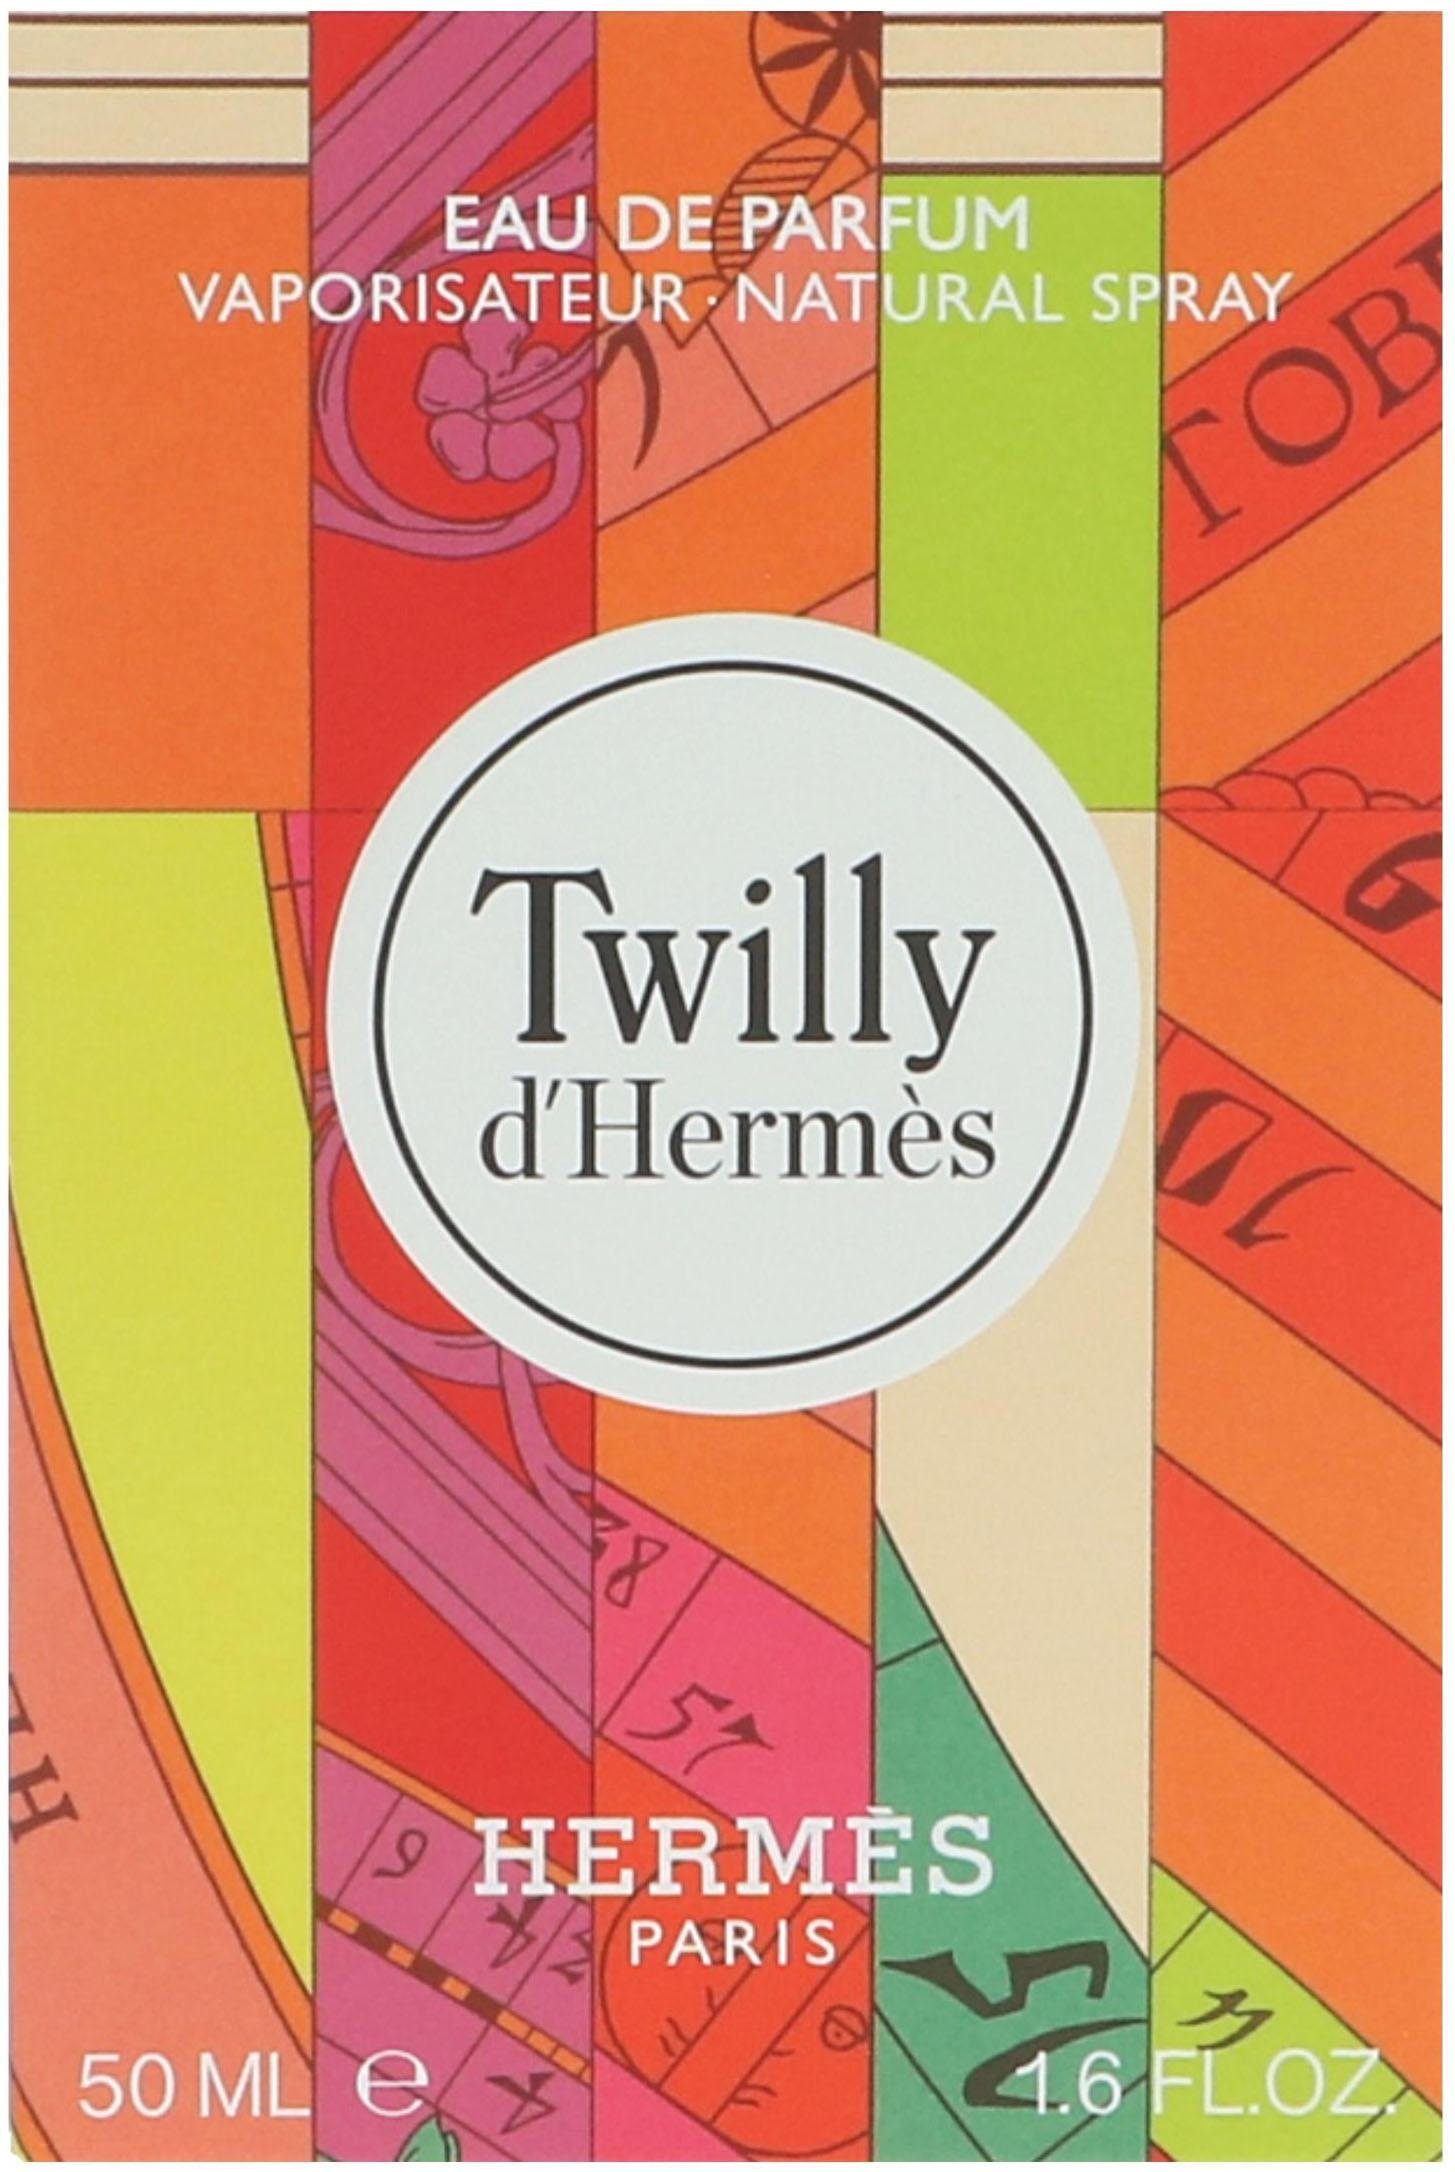 Parfum Twilly de d'Hermes HERMÈS Eau